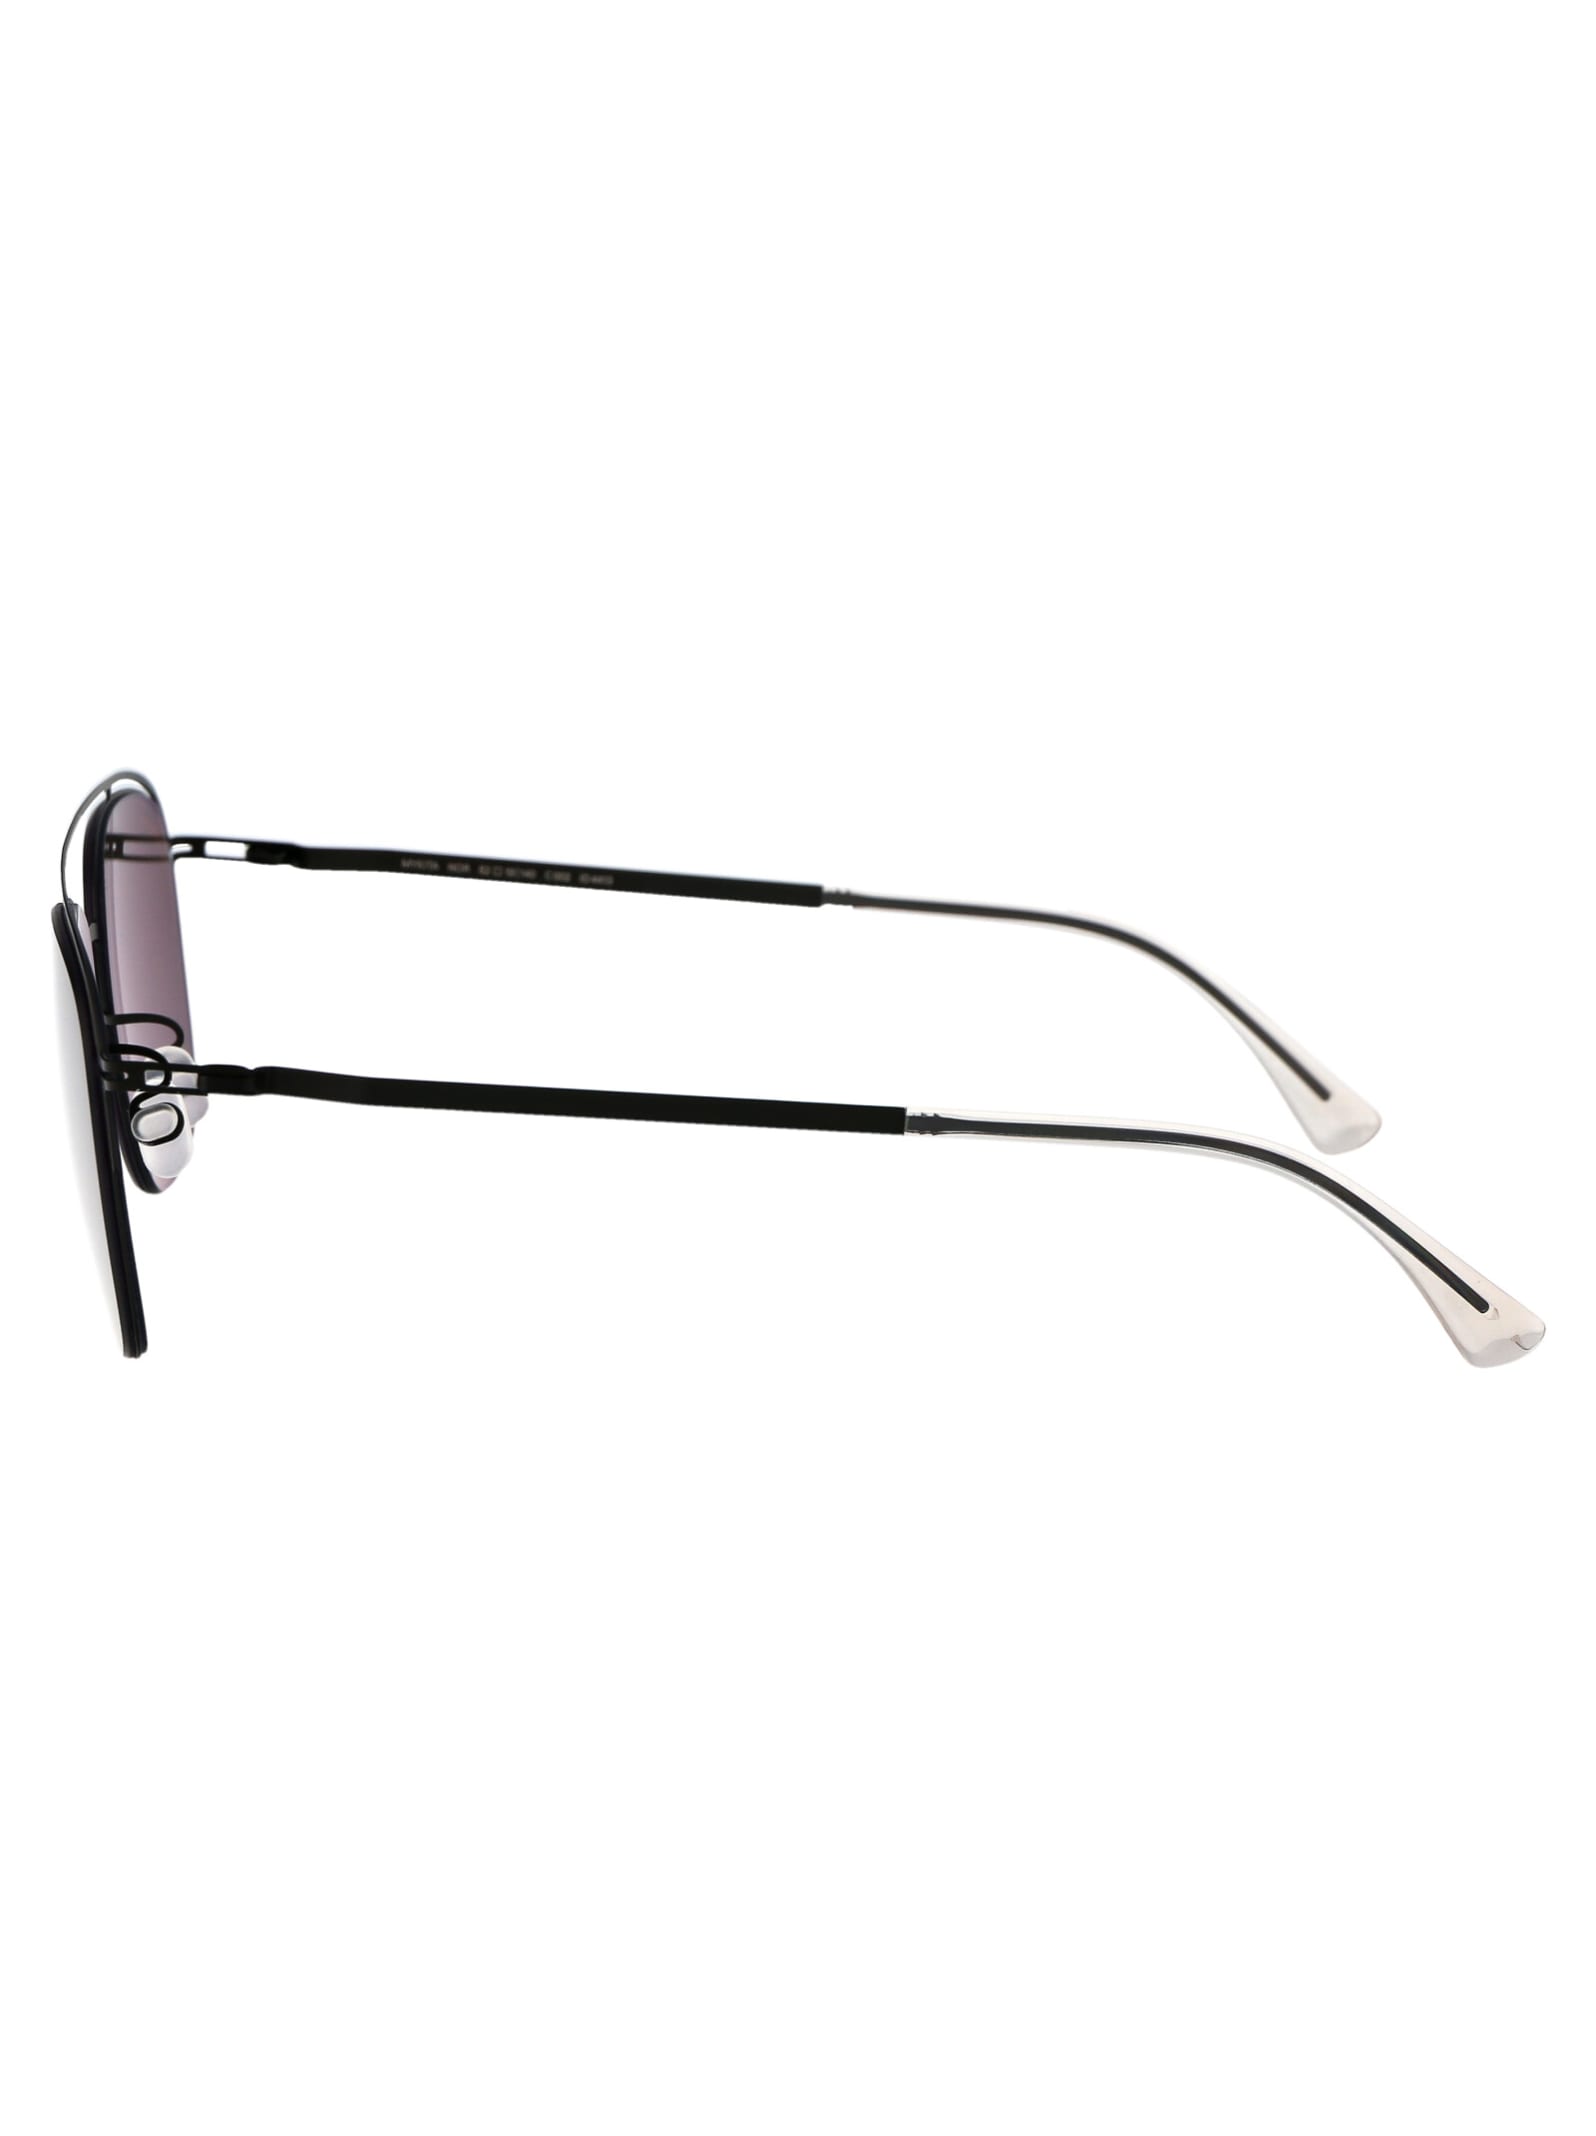 Shop Mykita Nor Sunglasses In 002 Black Polarized Pro Hi-con